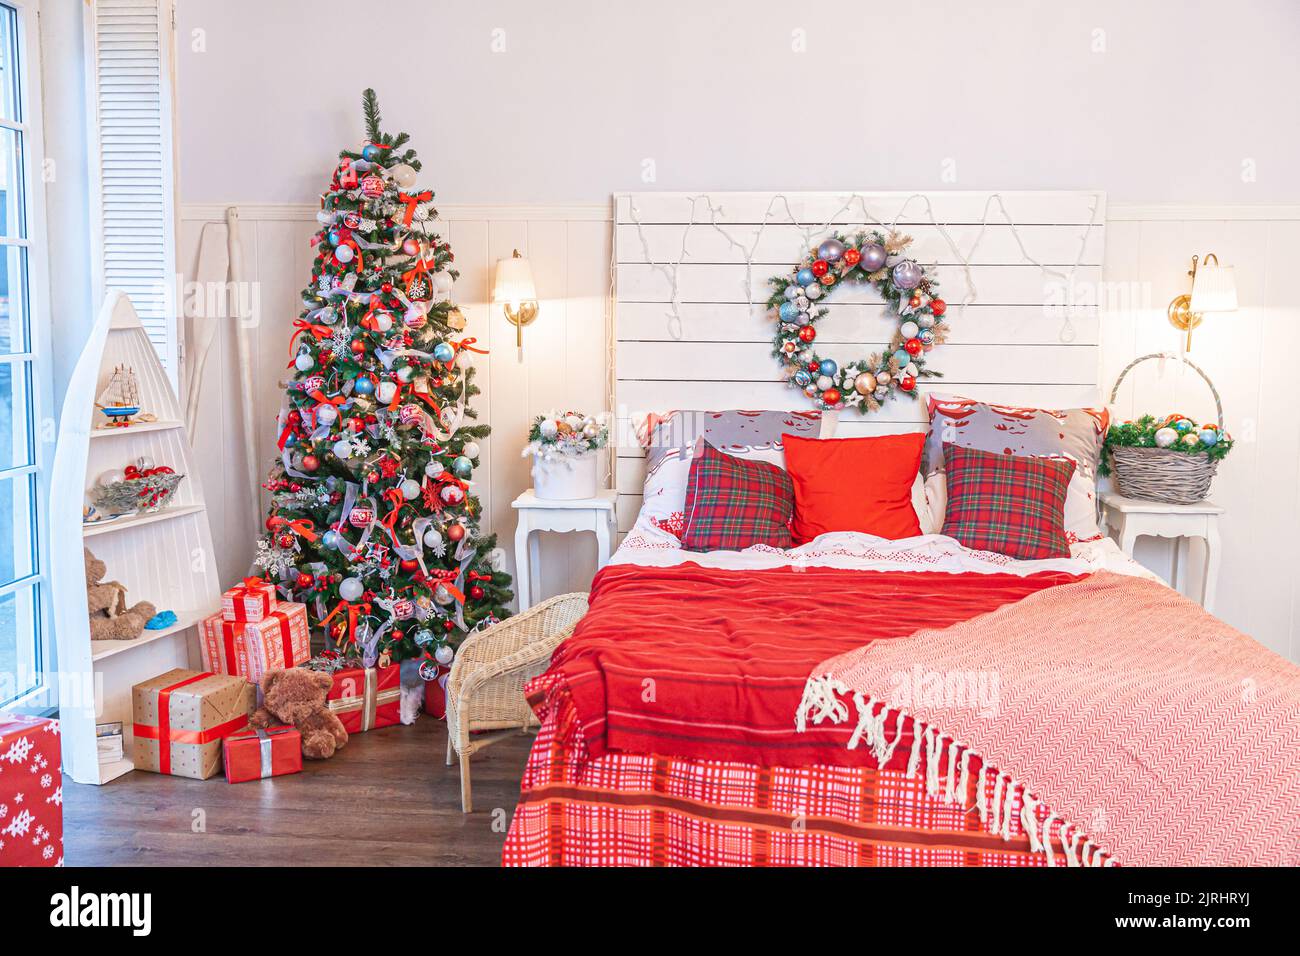 Klassischer Innenraum mit Weihnachtsbaum und traditionellen weißen roten Dekorationen. Modernes, sauberes, weißes, klassisches Innendesign-Apartment-Schlafzimmer. Heiligabend zu Hause. Minimalistisches Wohndesign Stockfoto